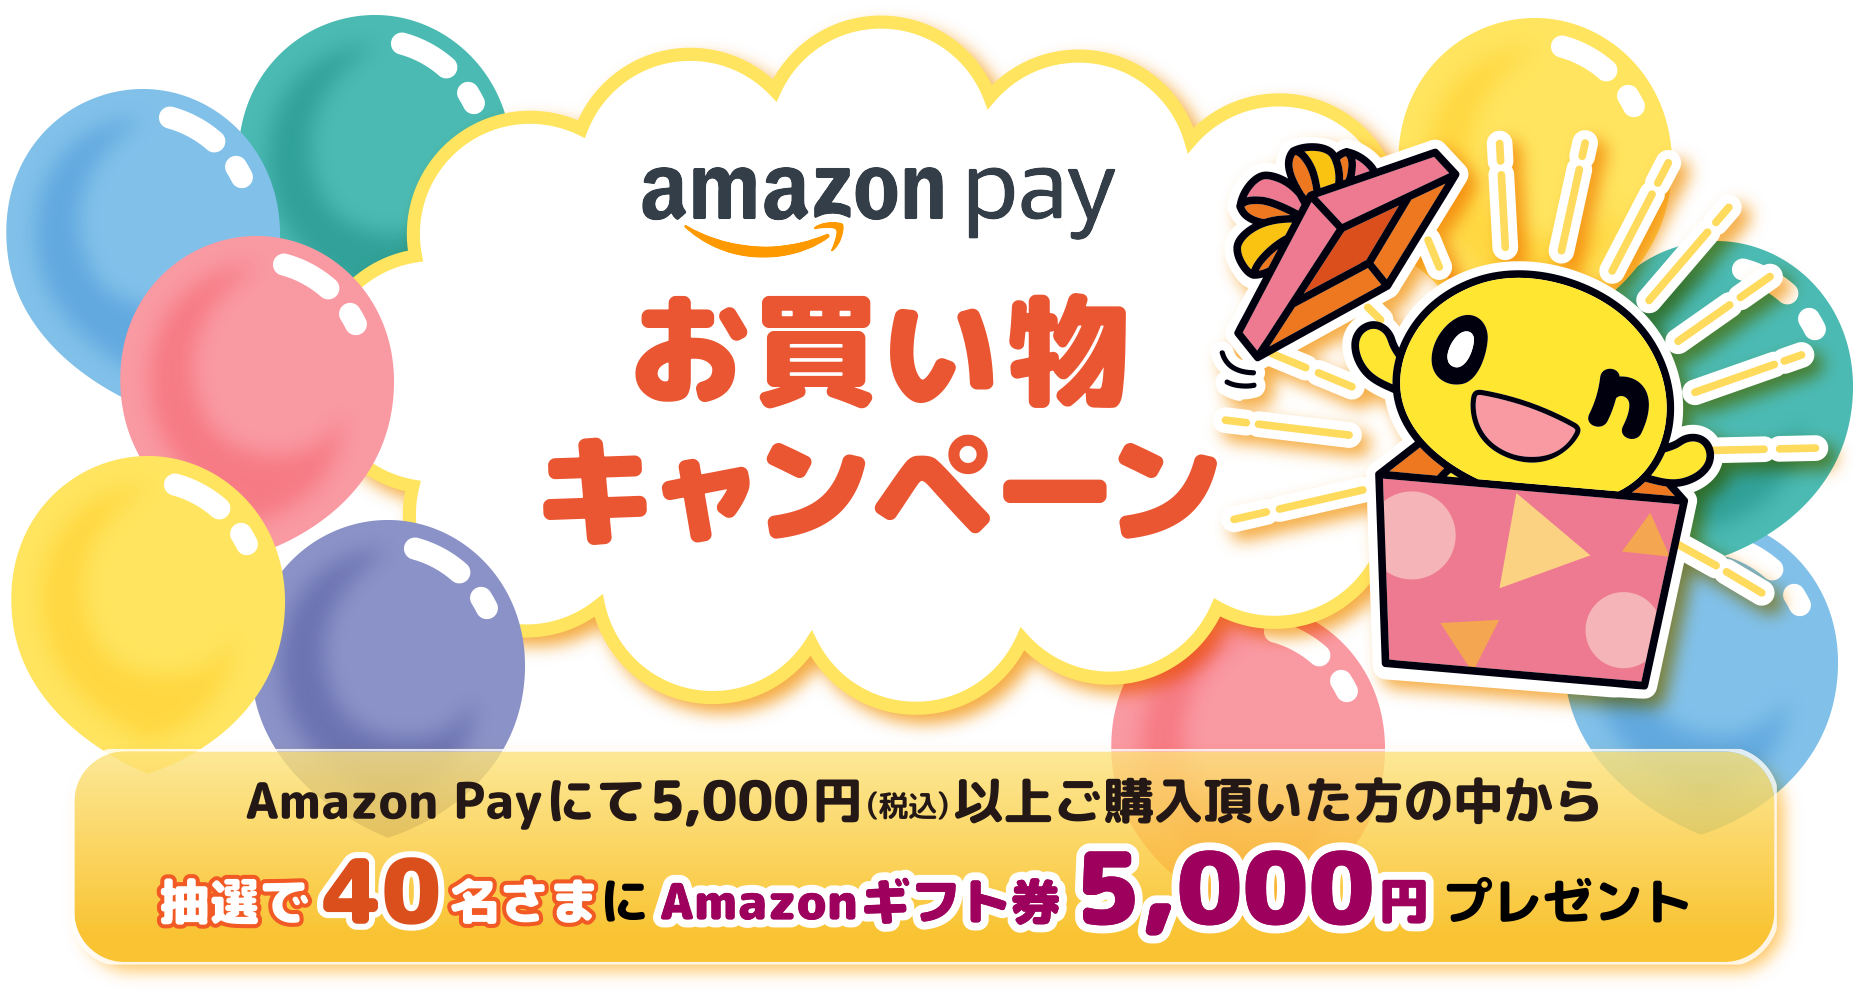 amazon payお買い物キャンペーン Amazon Payにて5,000円(税込)以上ご購入頂いた方の中から抽選で40名さまにAmazonギフト券5,000円プレゼント